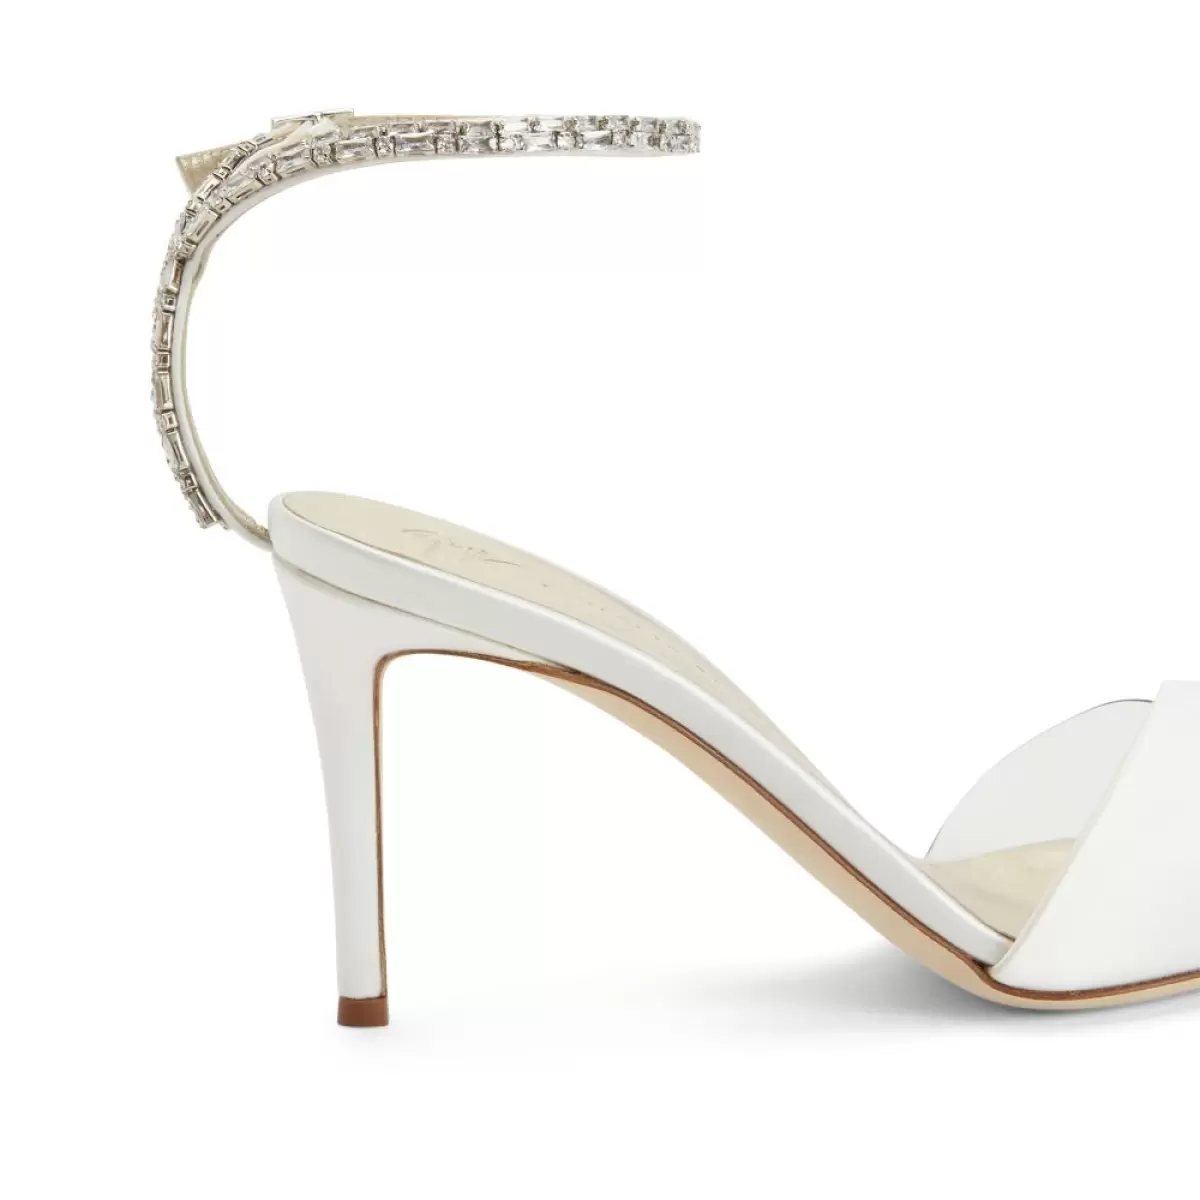 Blanco Mujer Giuseppe Zanotti Xenya Crystal Zapatos De Salón - 4